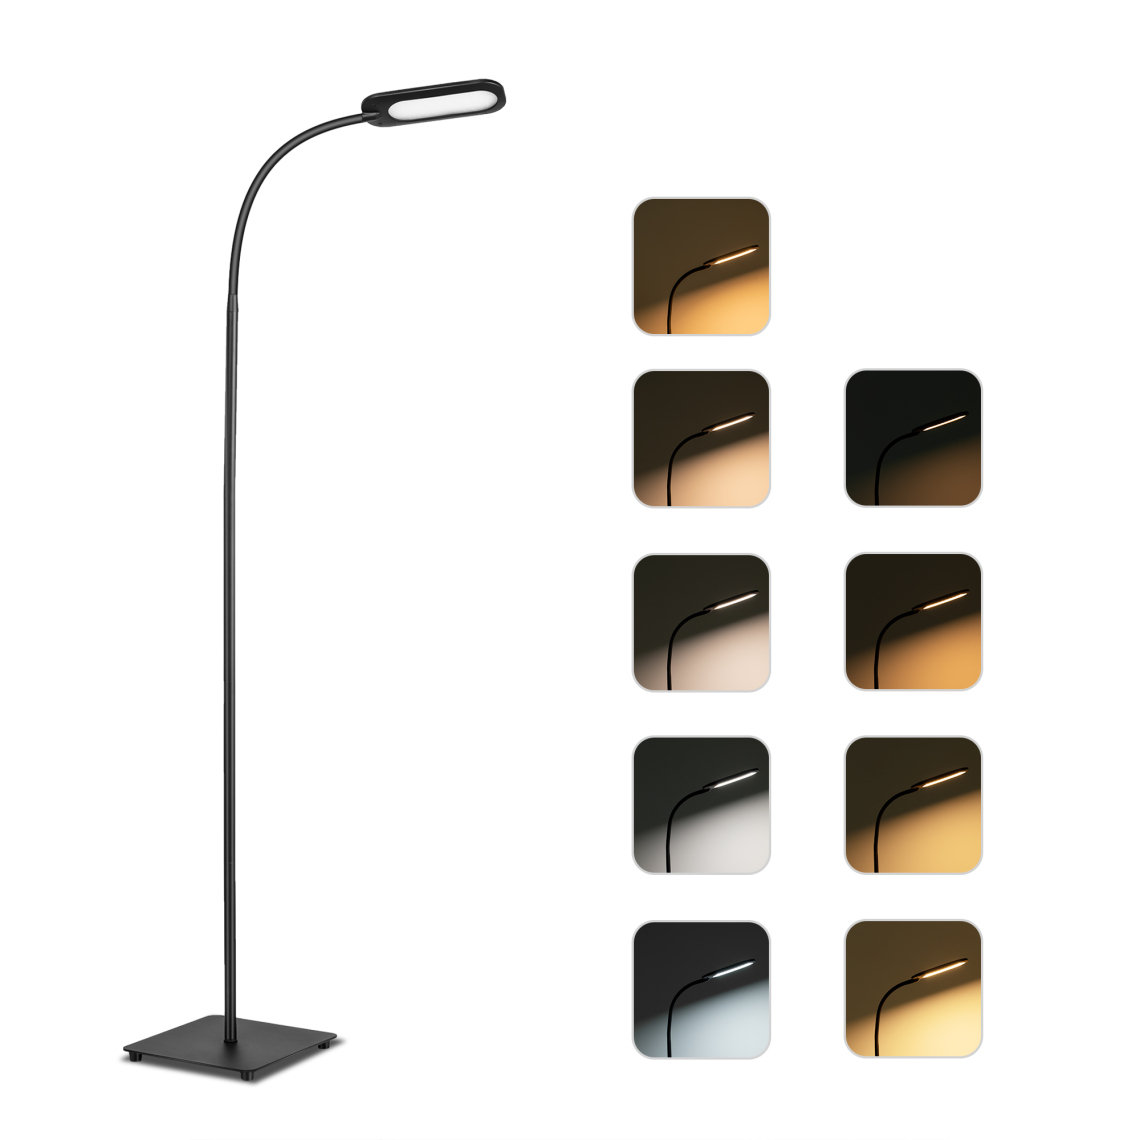 Teckin - Lampe de lecture TECKIN FL32 sur pied à LED, 5 températures de couleur et 4 niveaux de luminosité avec col de cygne réglable, lampes debout à commande tactile et à gradation pour le salon, la chambre à coucher, l'étude et la couture. - Ampoules LED